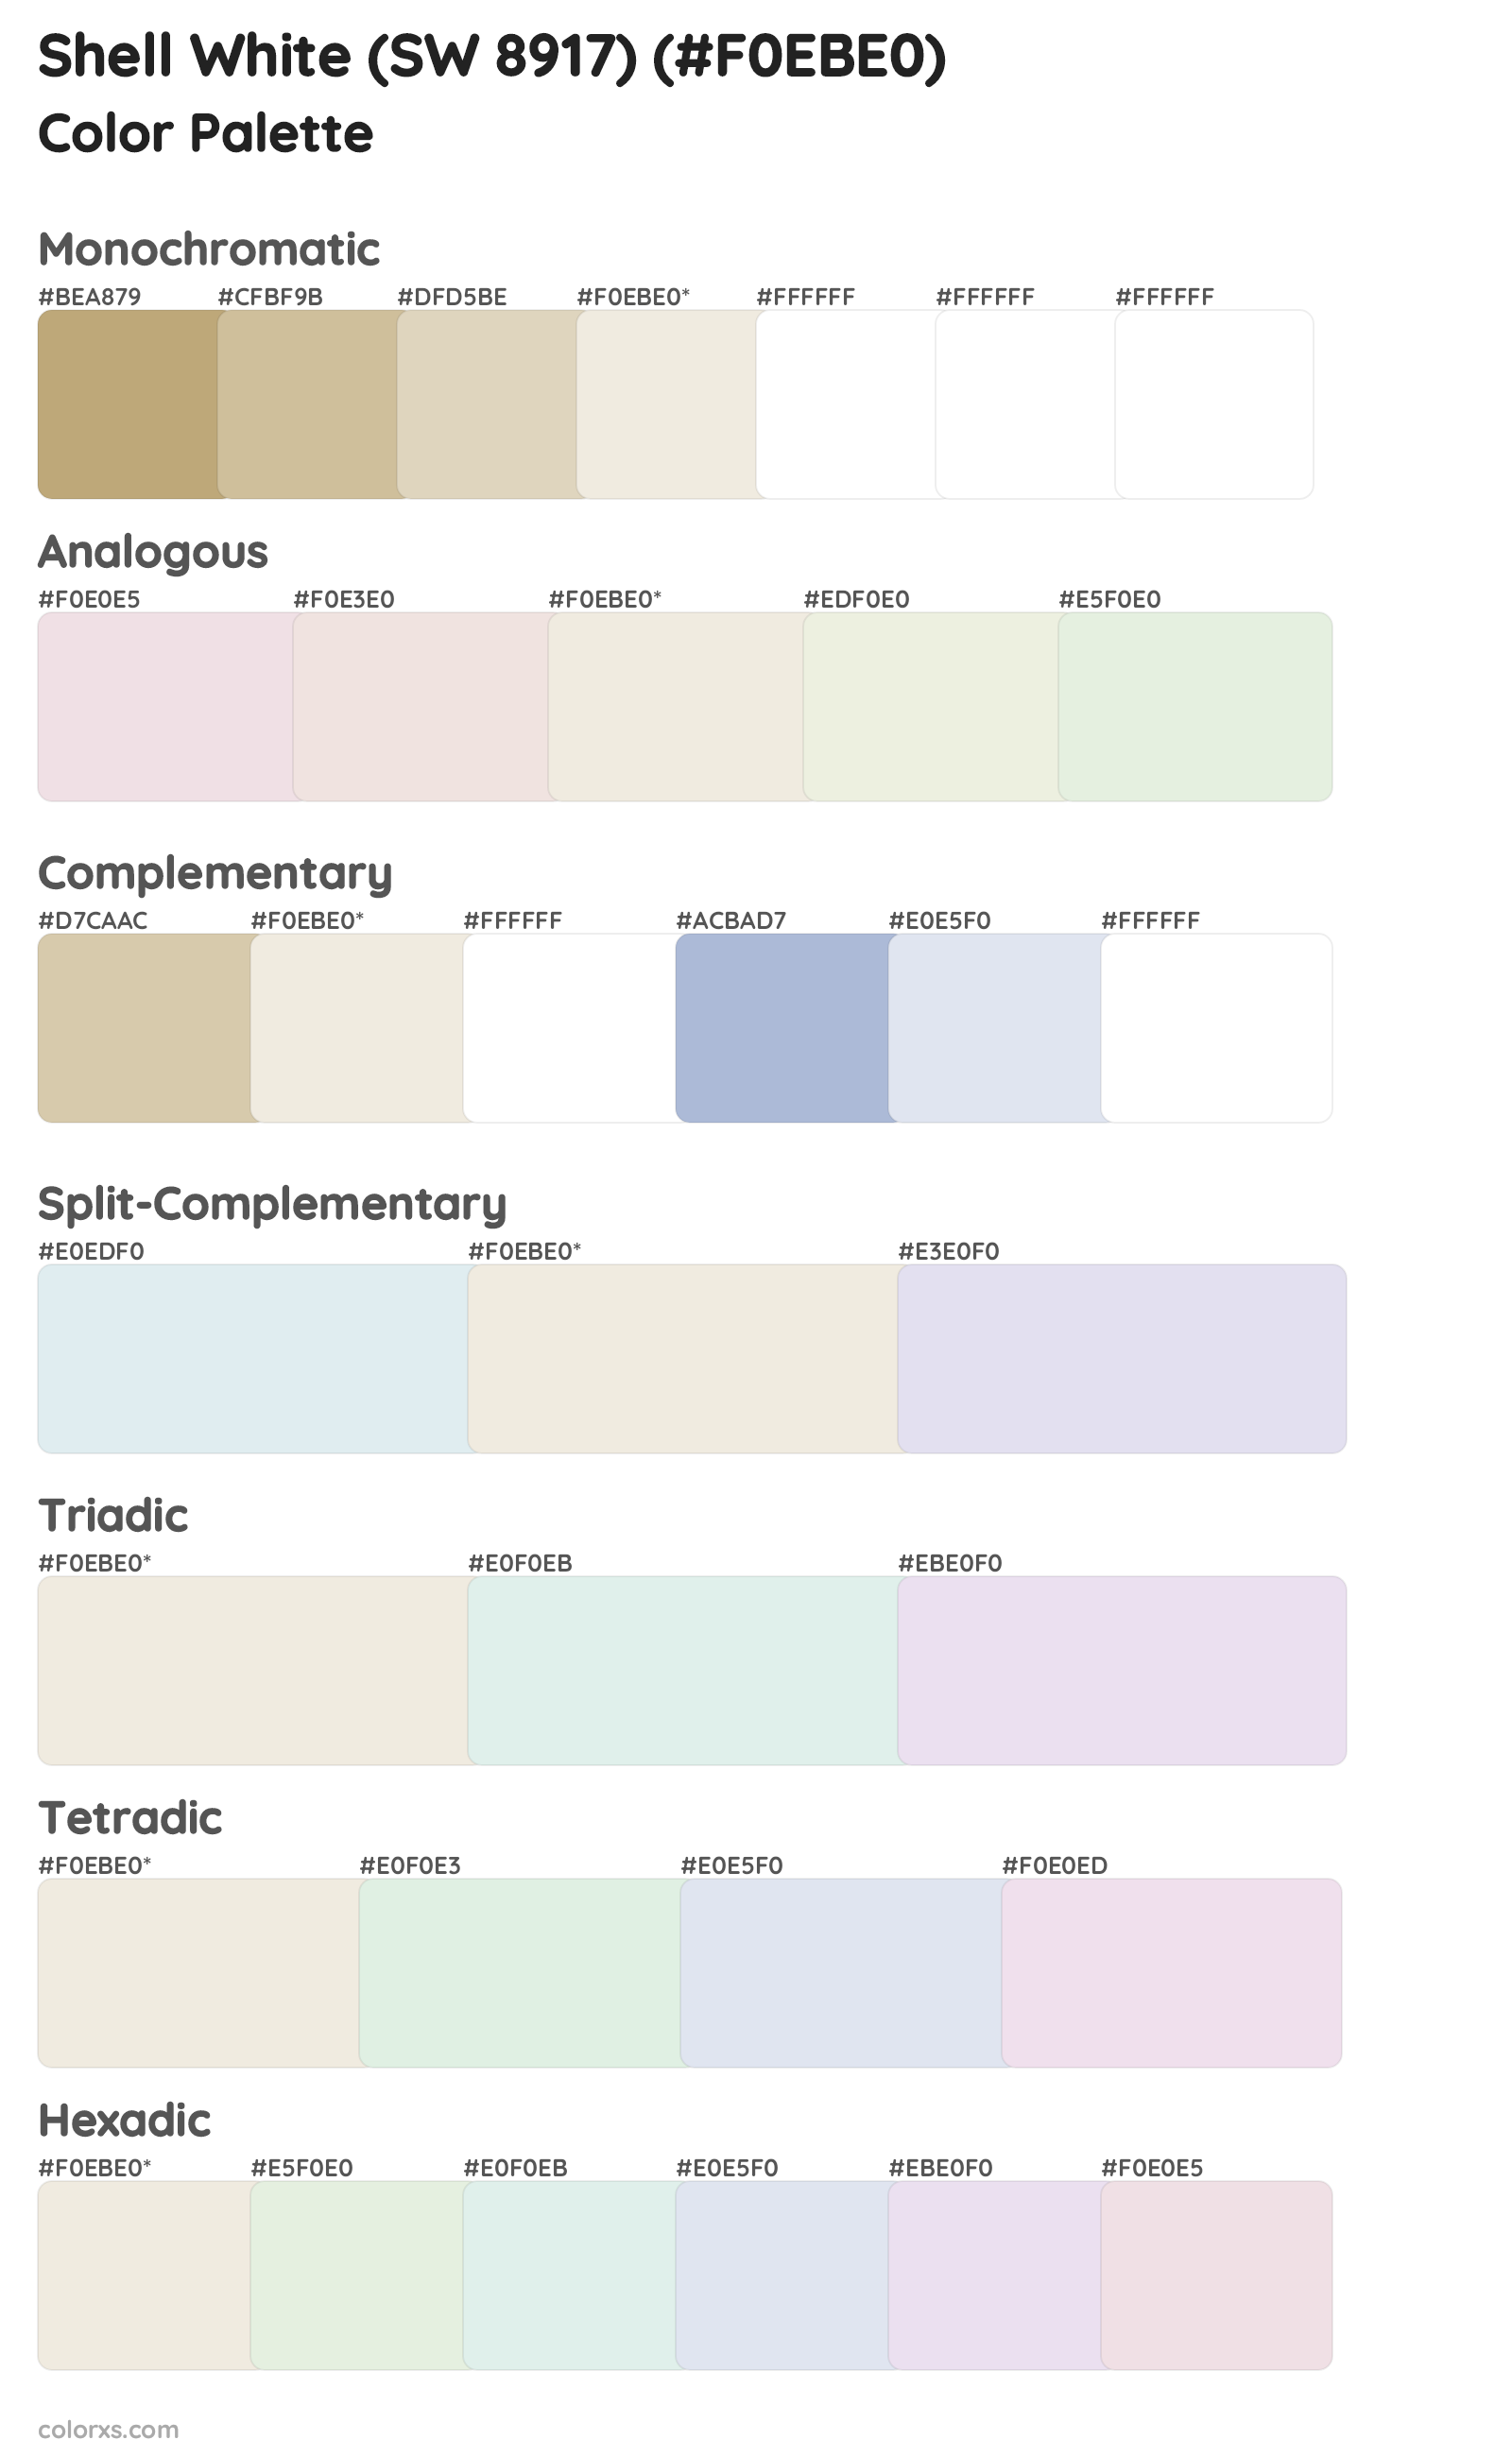 Shell White (SW 8917) Color Scheme Palettes